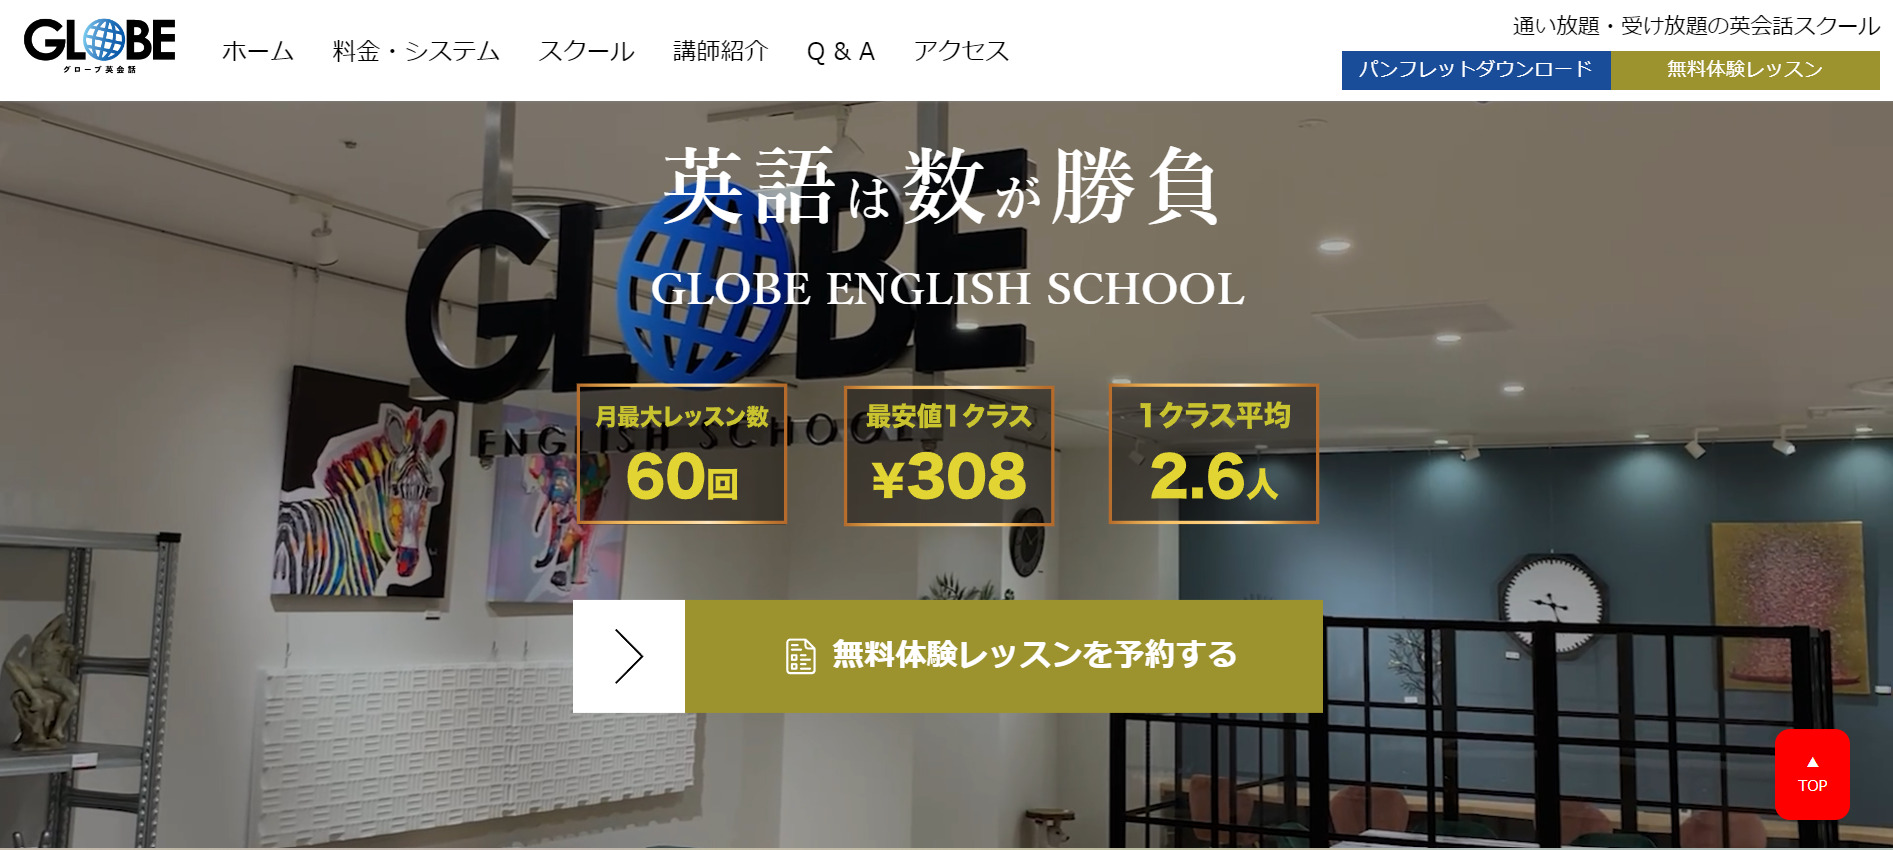 global_english_school